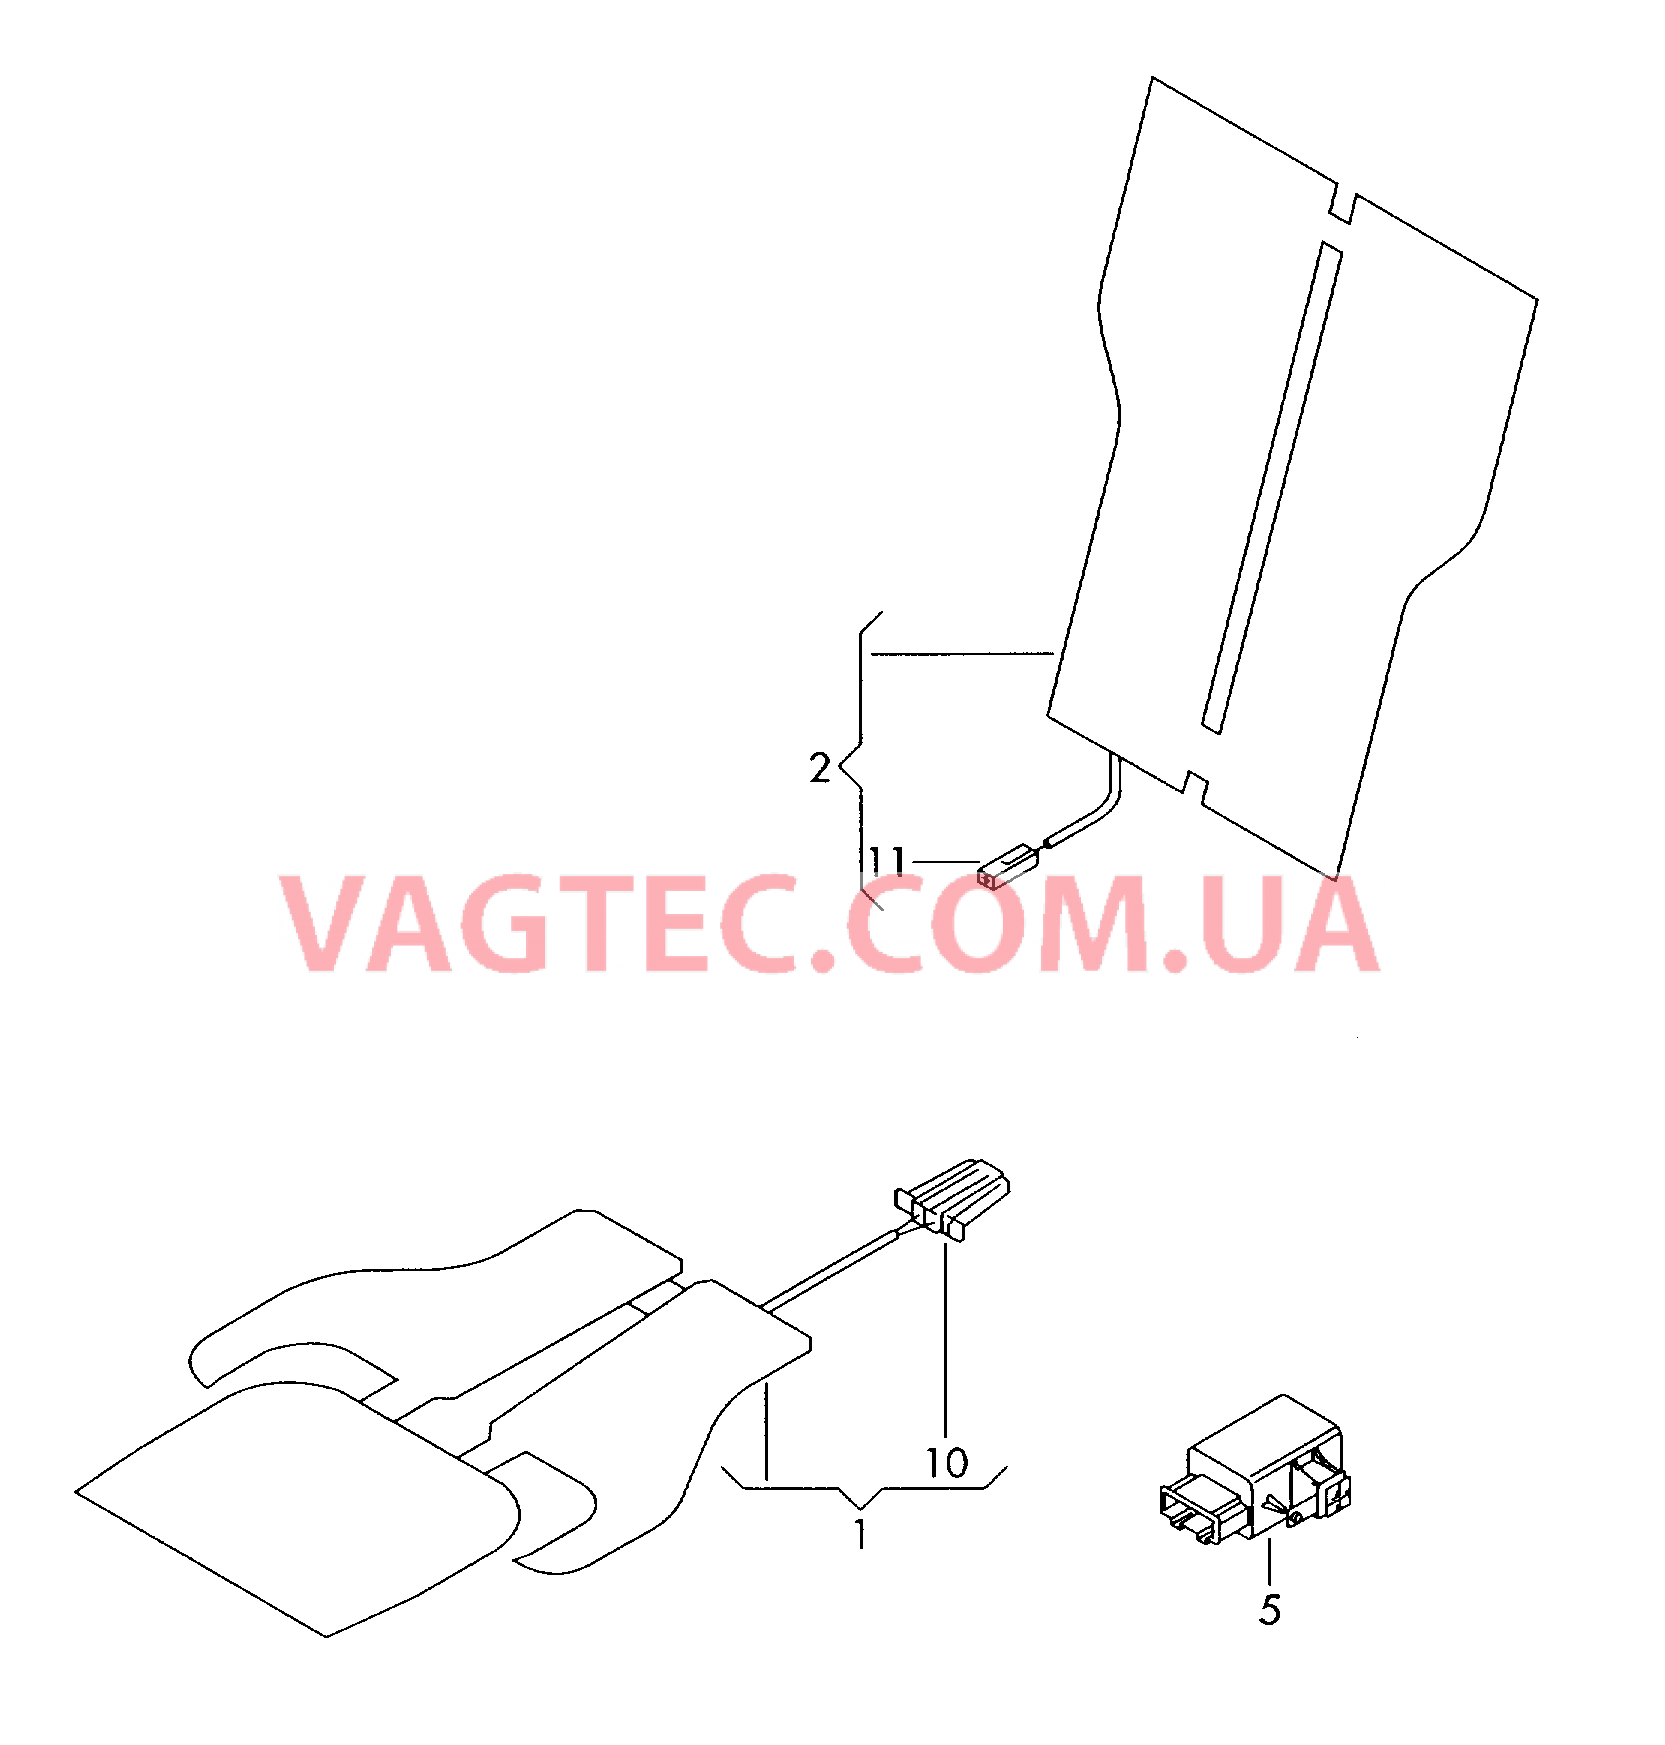 Электродетали для обогрева подушки и спинки сиденья  для VOLKSWAGEN CC 2017